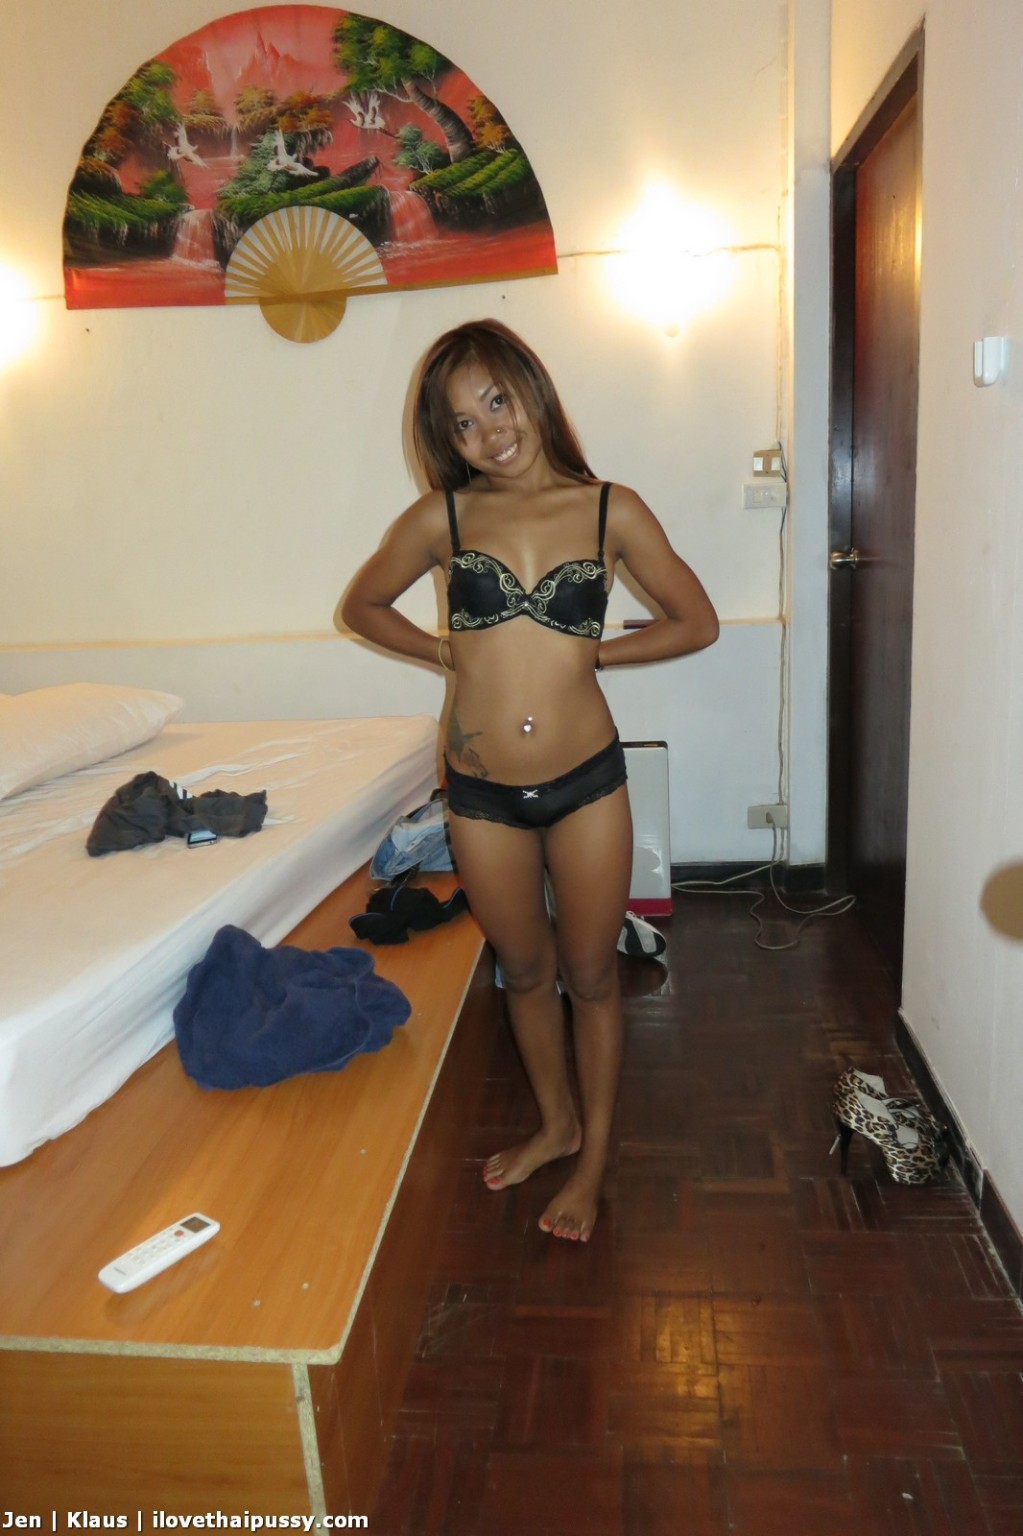 Hot thailändischen Bargirl Bareback kein Kondom Creampie Sex Tourist liebt asiatischen Babe
 #67671302